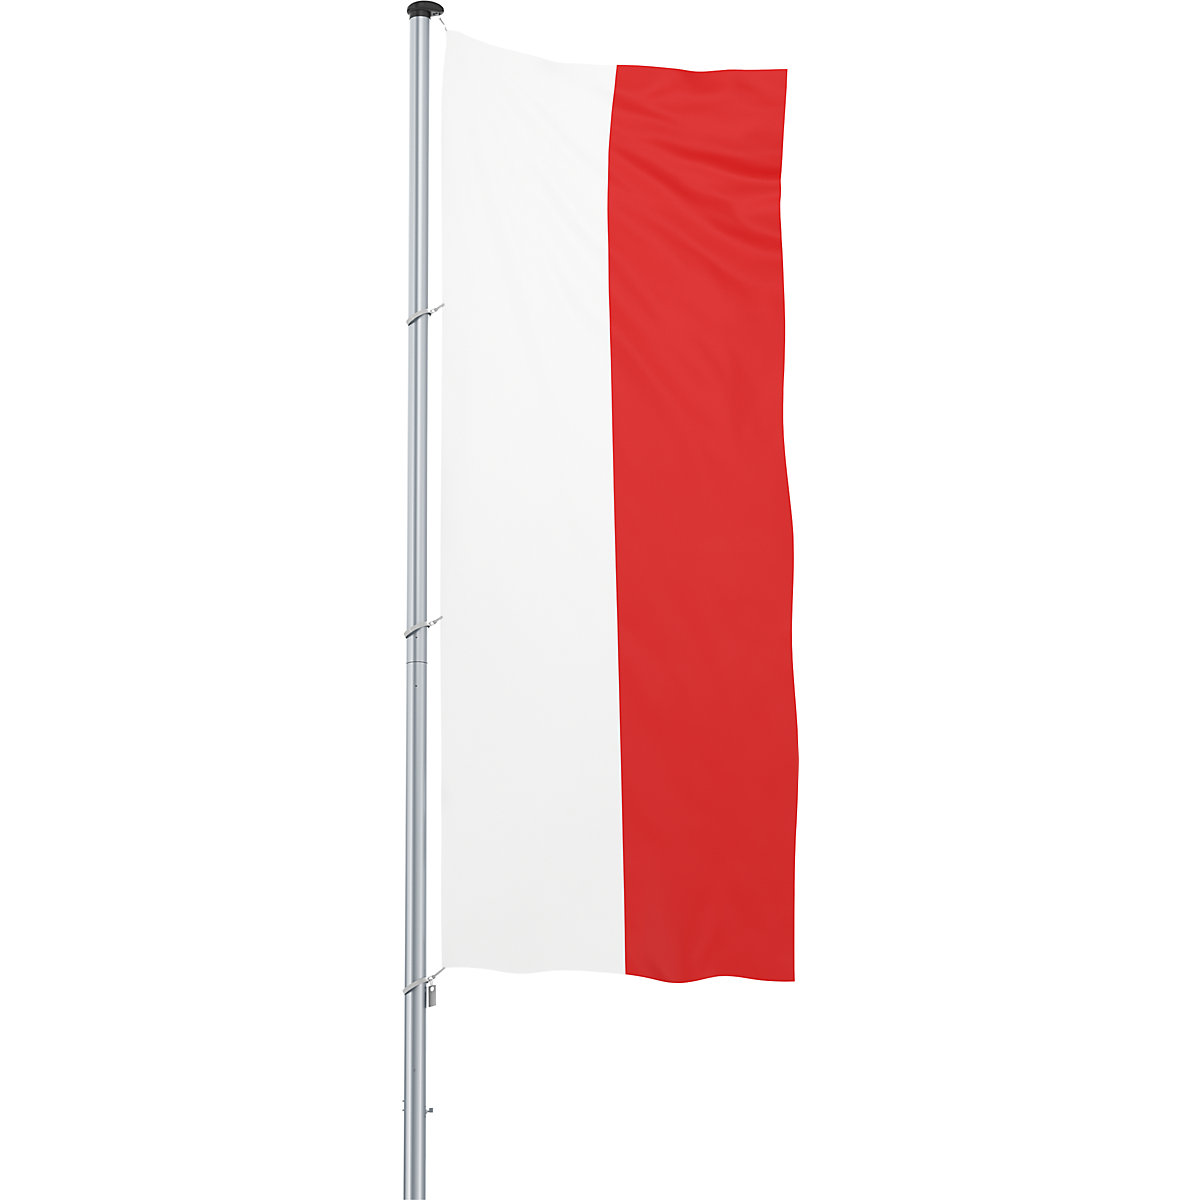 Bandiera/Bandiera nazionale – Mannus, formato 1,2 x 3 m, Polonia-8